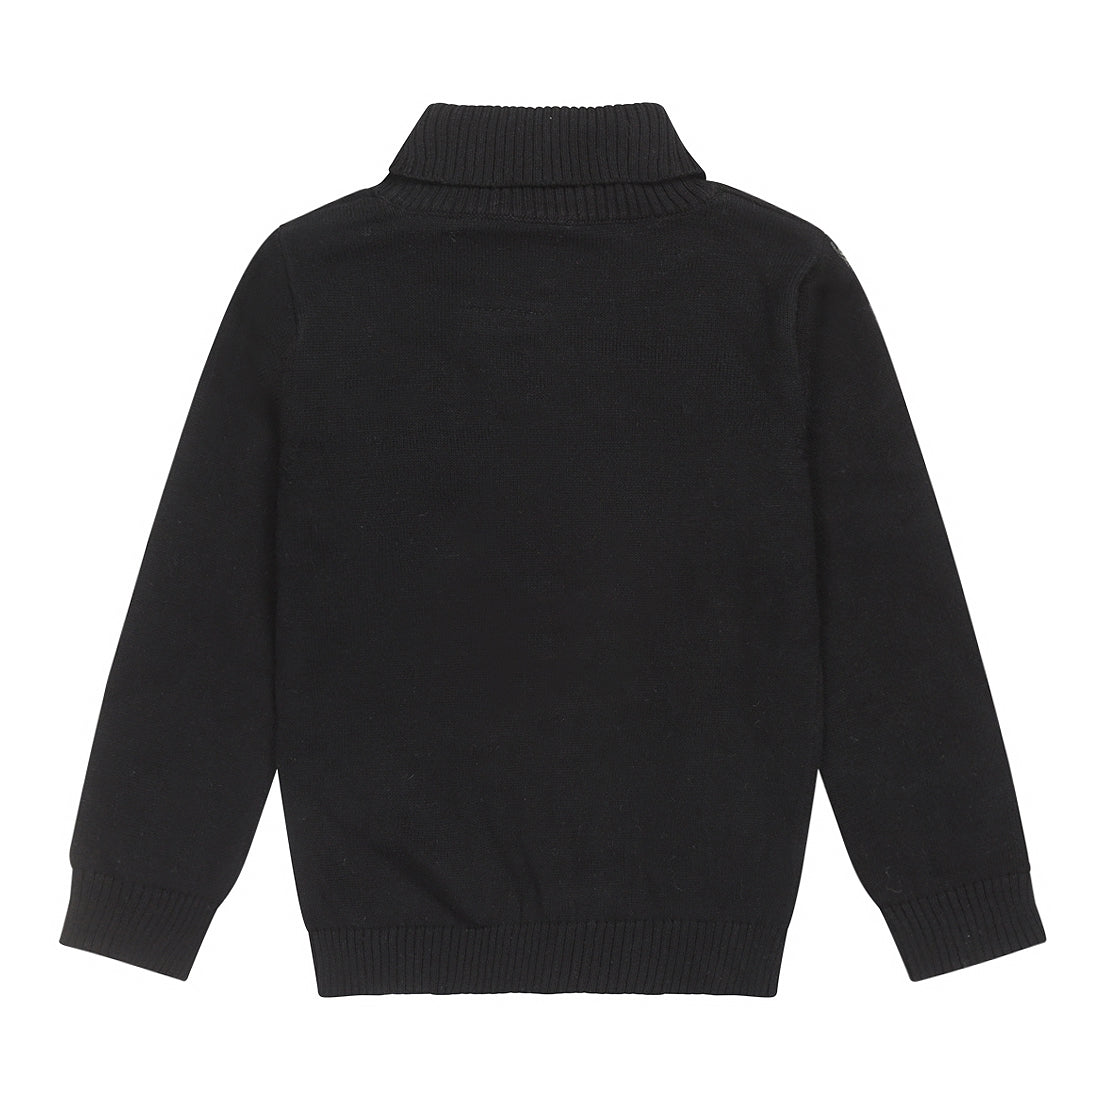 Jongens Sweater ls with rollneck van Koko Noko in de kleur Black in maat 128.